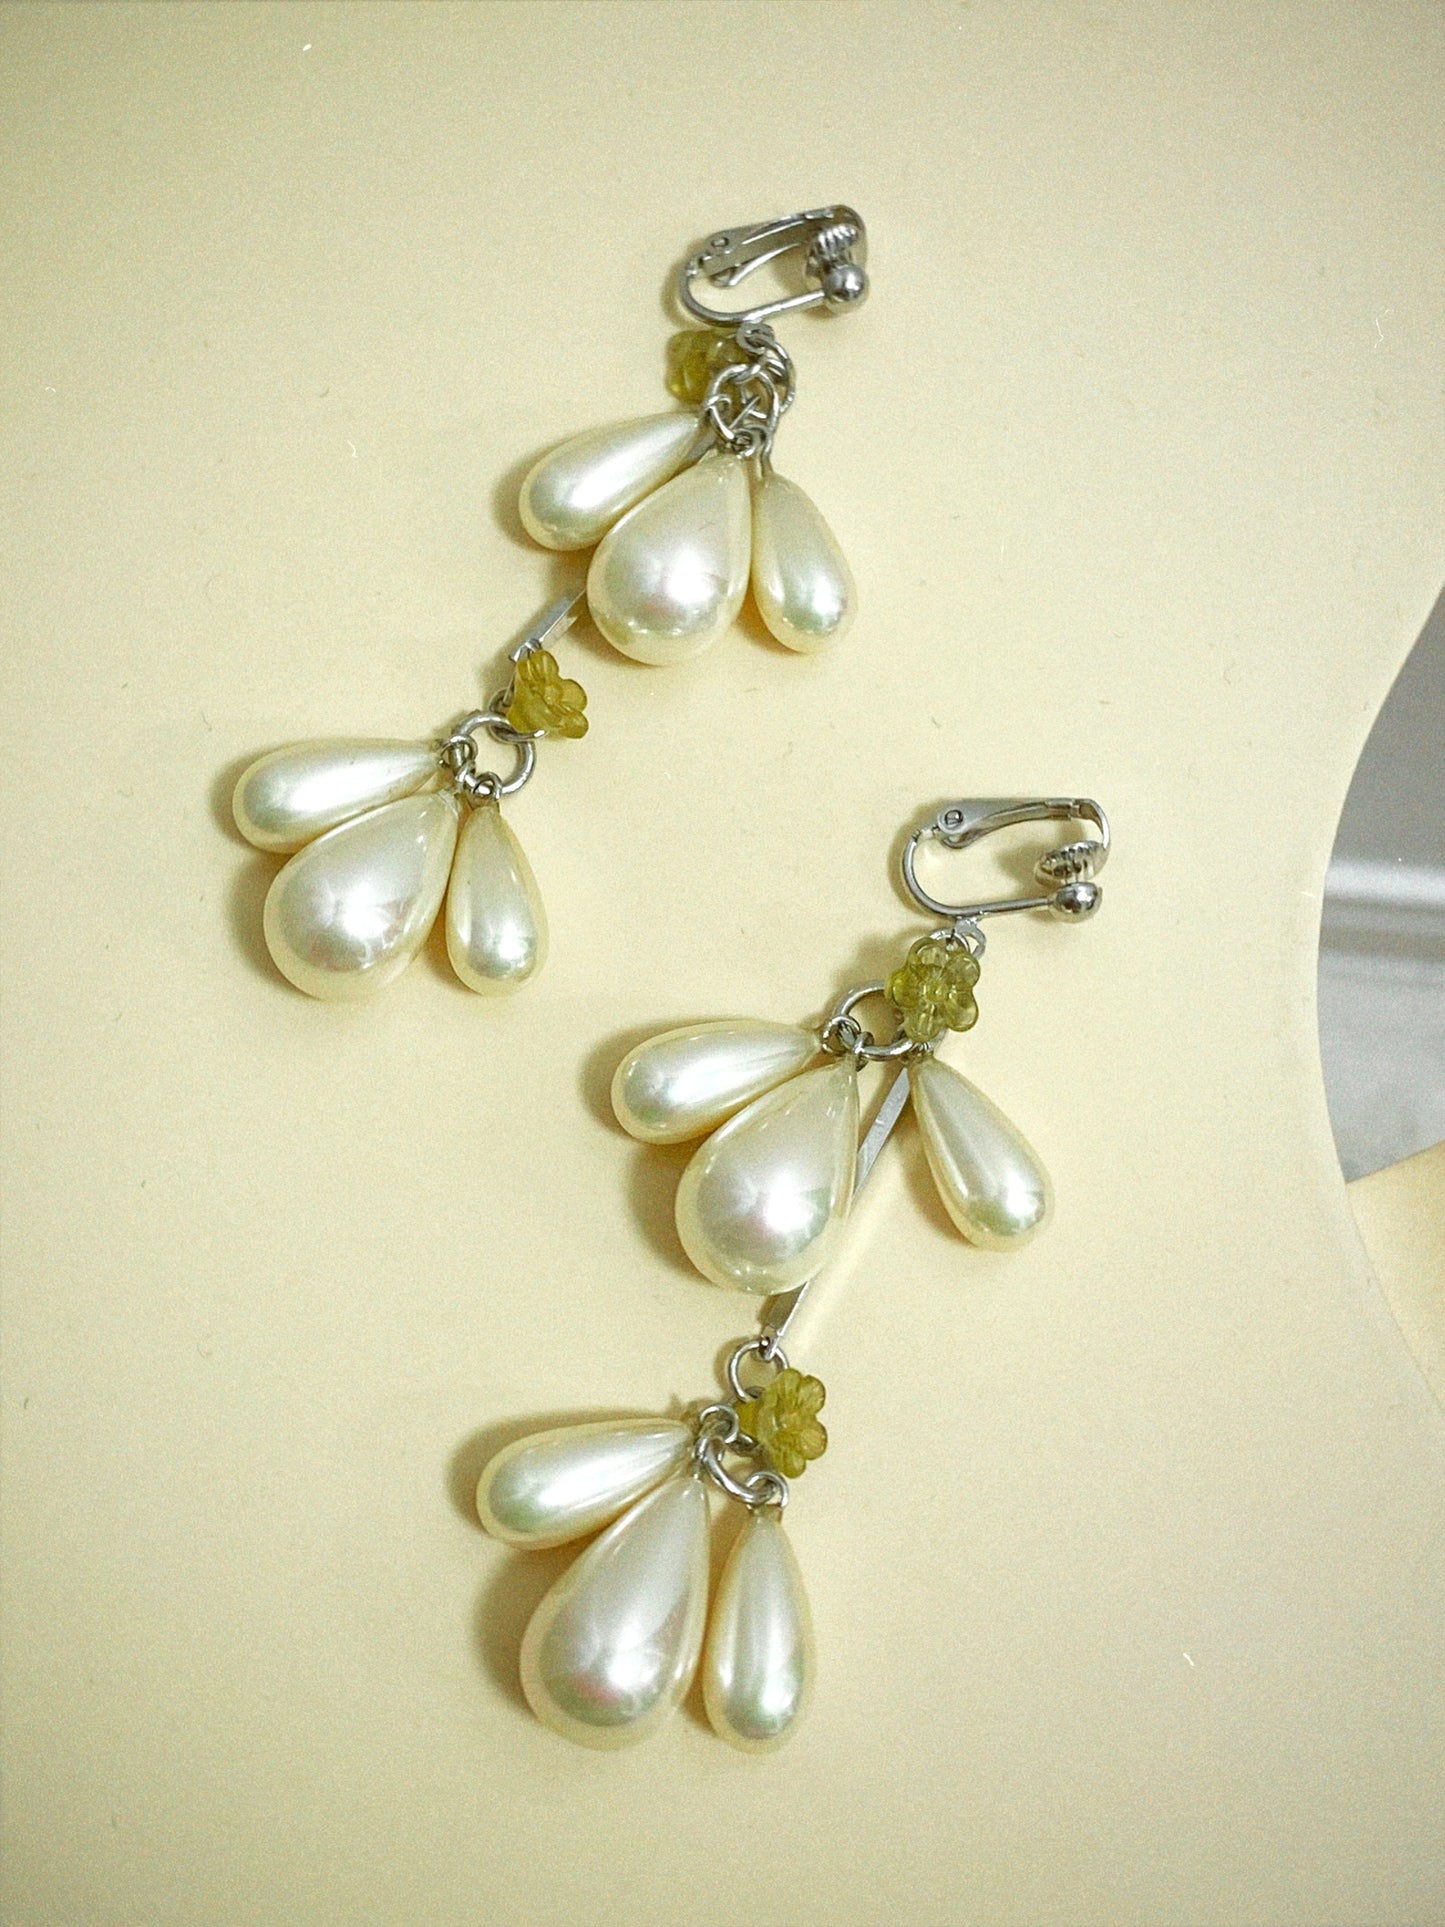 Pistachio earrings